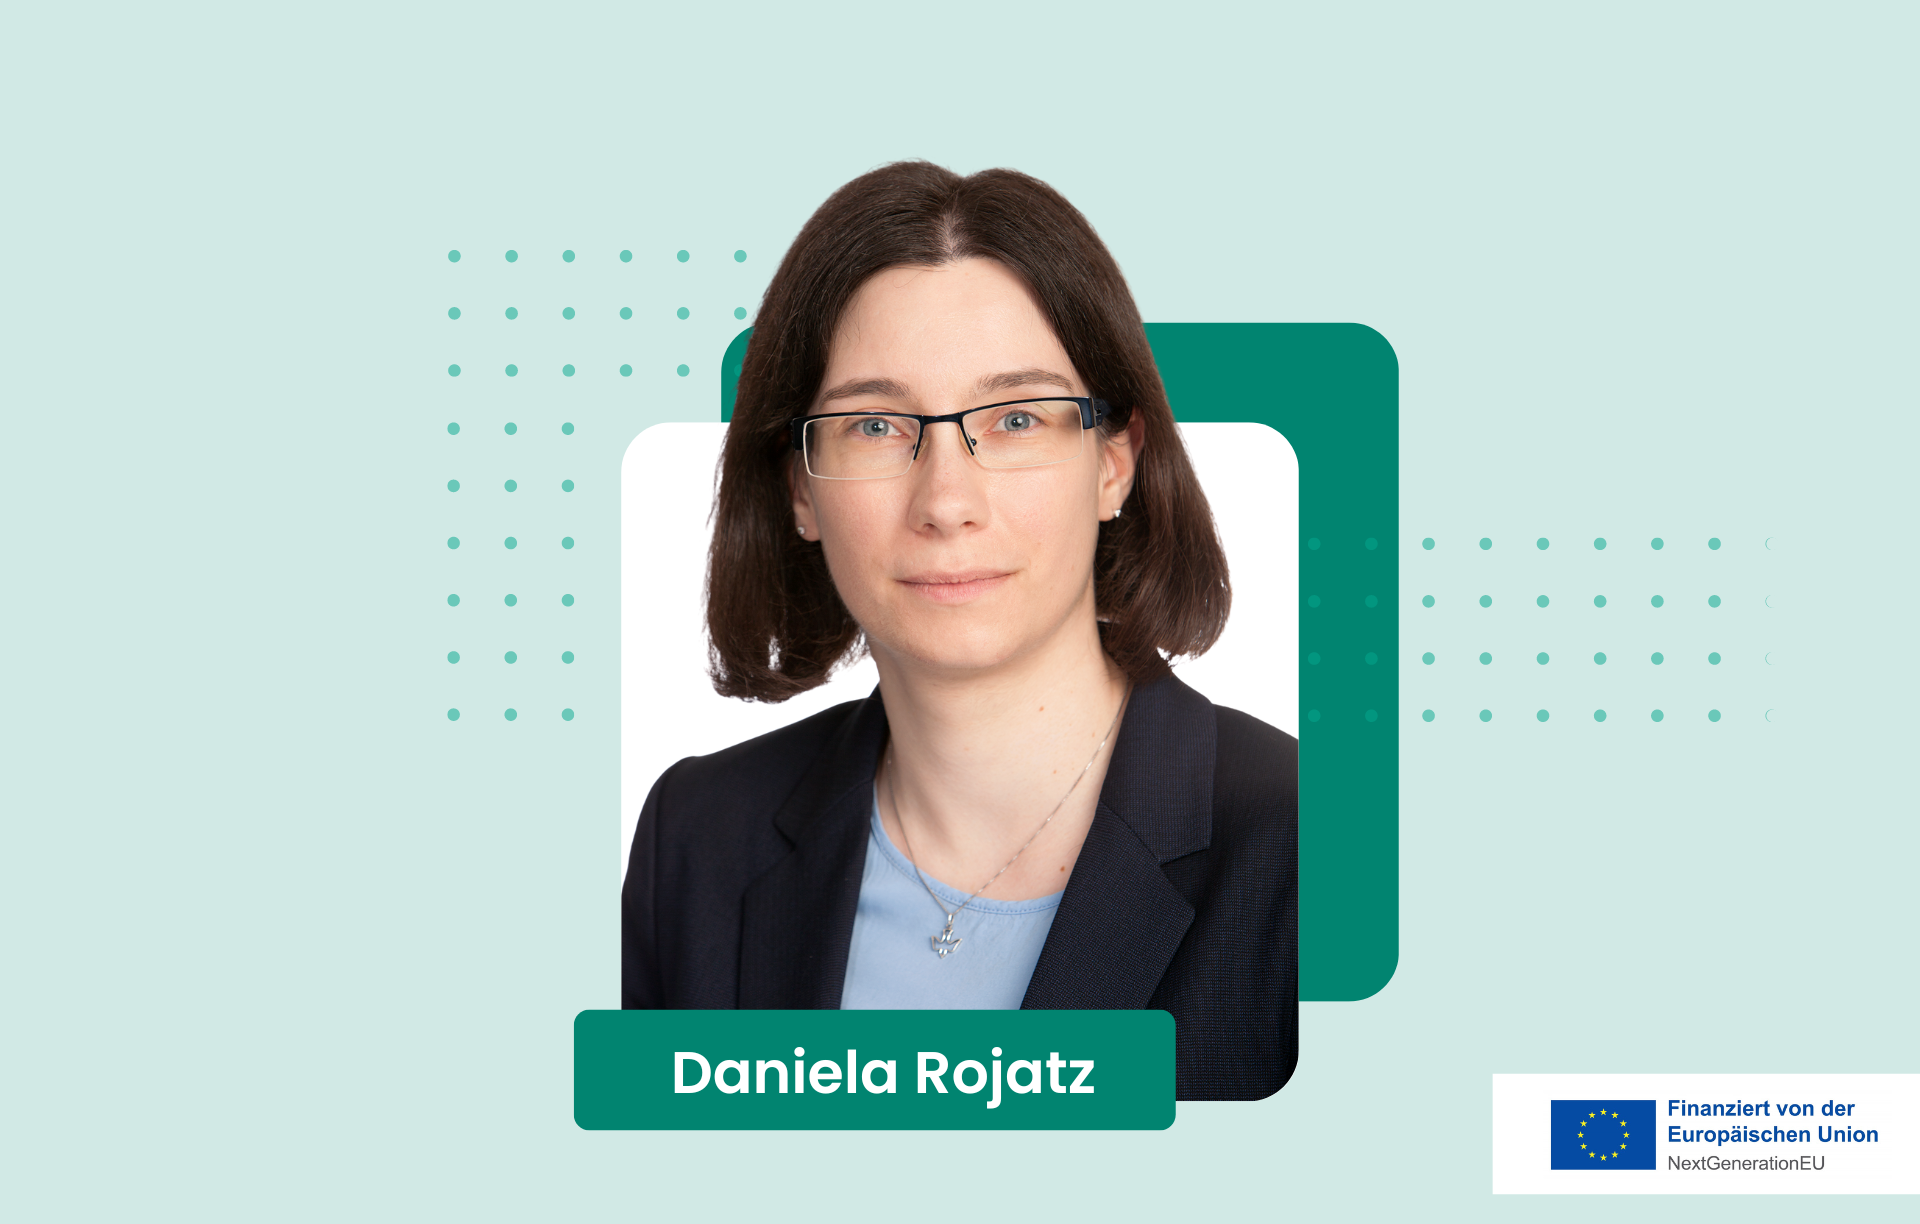 Profilbild von Daniela Rojatz mit einem Kästchen indem ihr Name steht